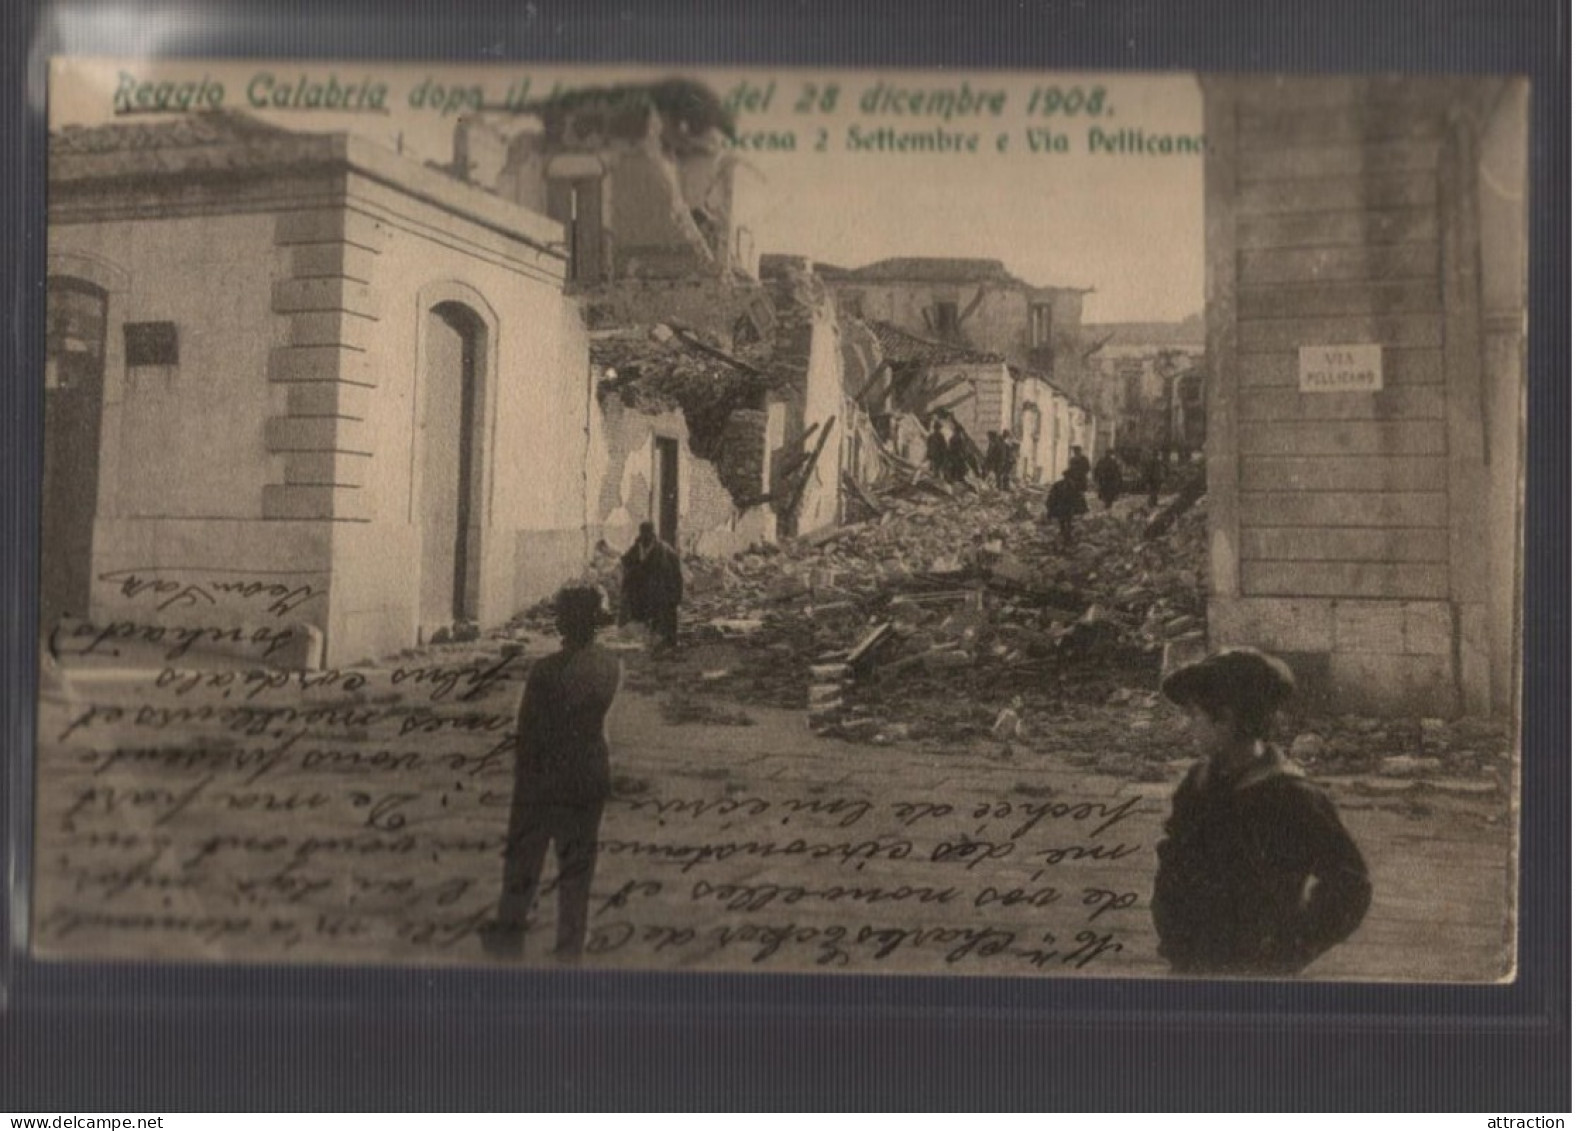 ITALIA-CALABRIA-REGGIO CALABRIA-TERREMOTO 1908-scesa 2 Settembre E Via Pellicano - Reggio Calabria